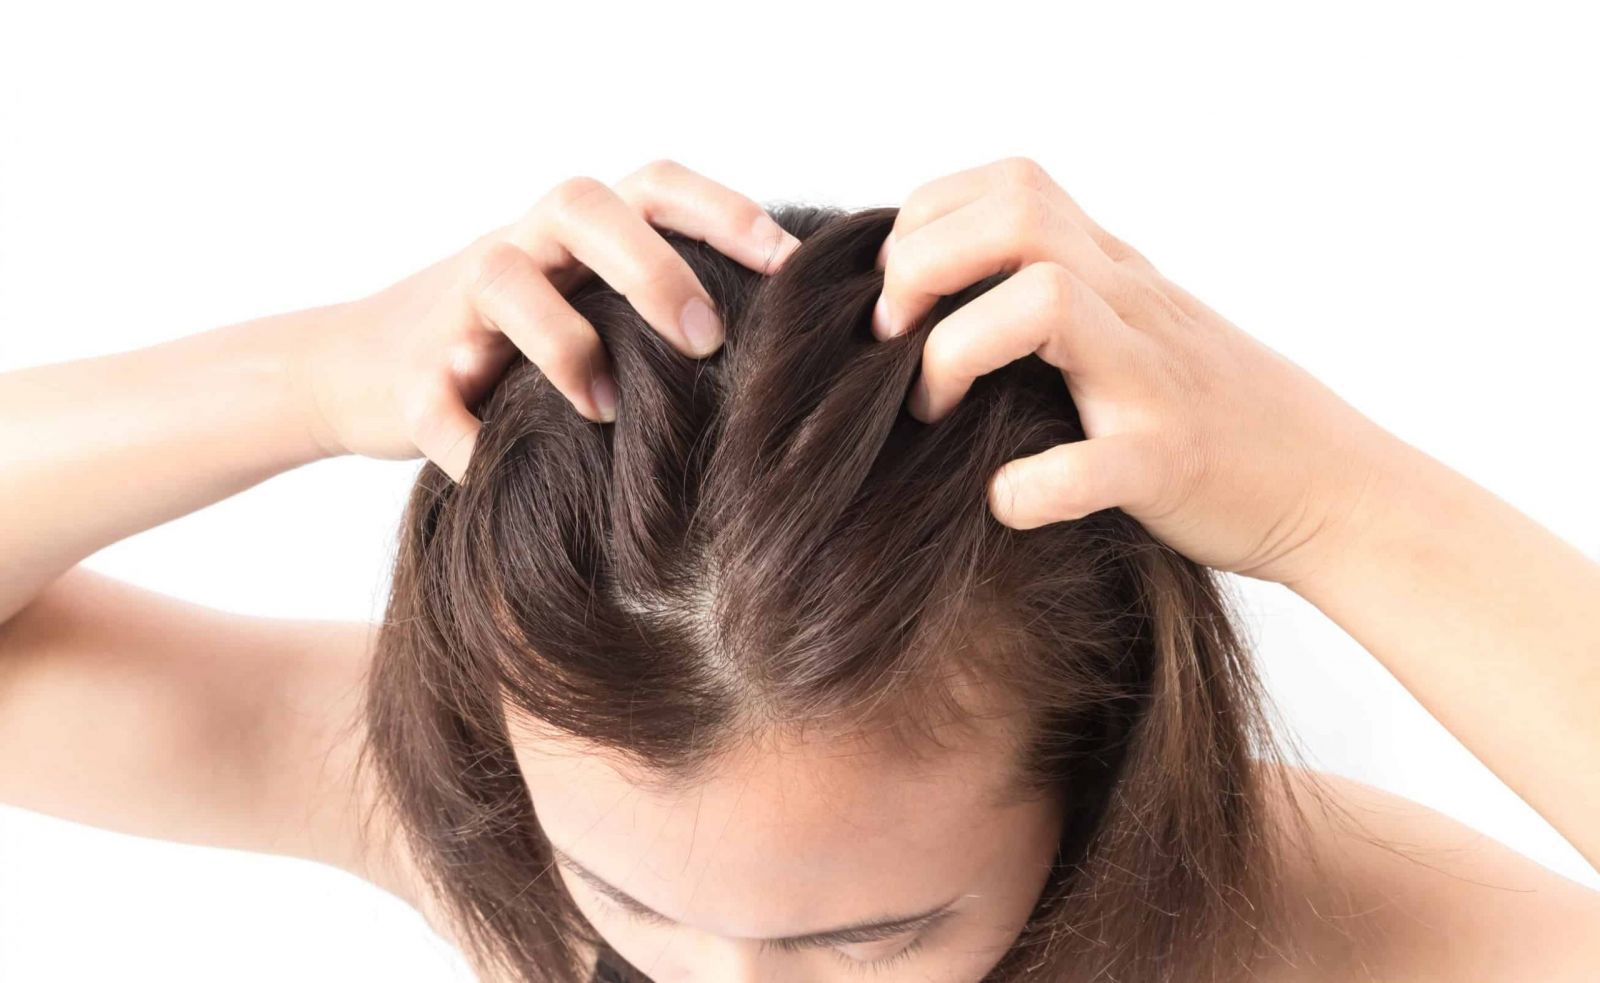 Massage tóc đúng cách: Massage da đầu là một cách hiệu quả để kích thích tóc mọc nhanh hơn. Bạn có thể sử dụng lược massage chuyên dụng hoặc đầu ngón tay, thực hiện các động tác massage tròn nhẹ nhàng trên da đầu trong khoảng 5-10 phút mỗi ngày. Điều này giúp tăng cường lưu thông máu đến da đầu, cung cấp dưỡng chất và kích thích sự phát triển của tóc